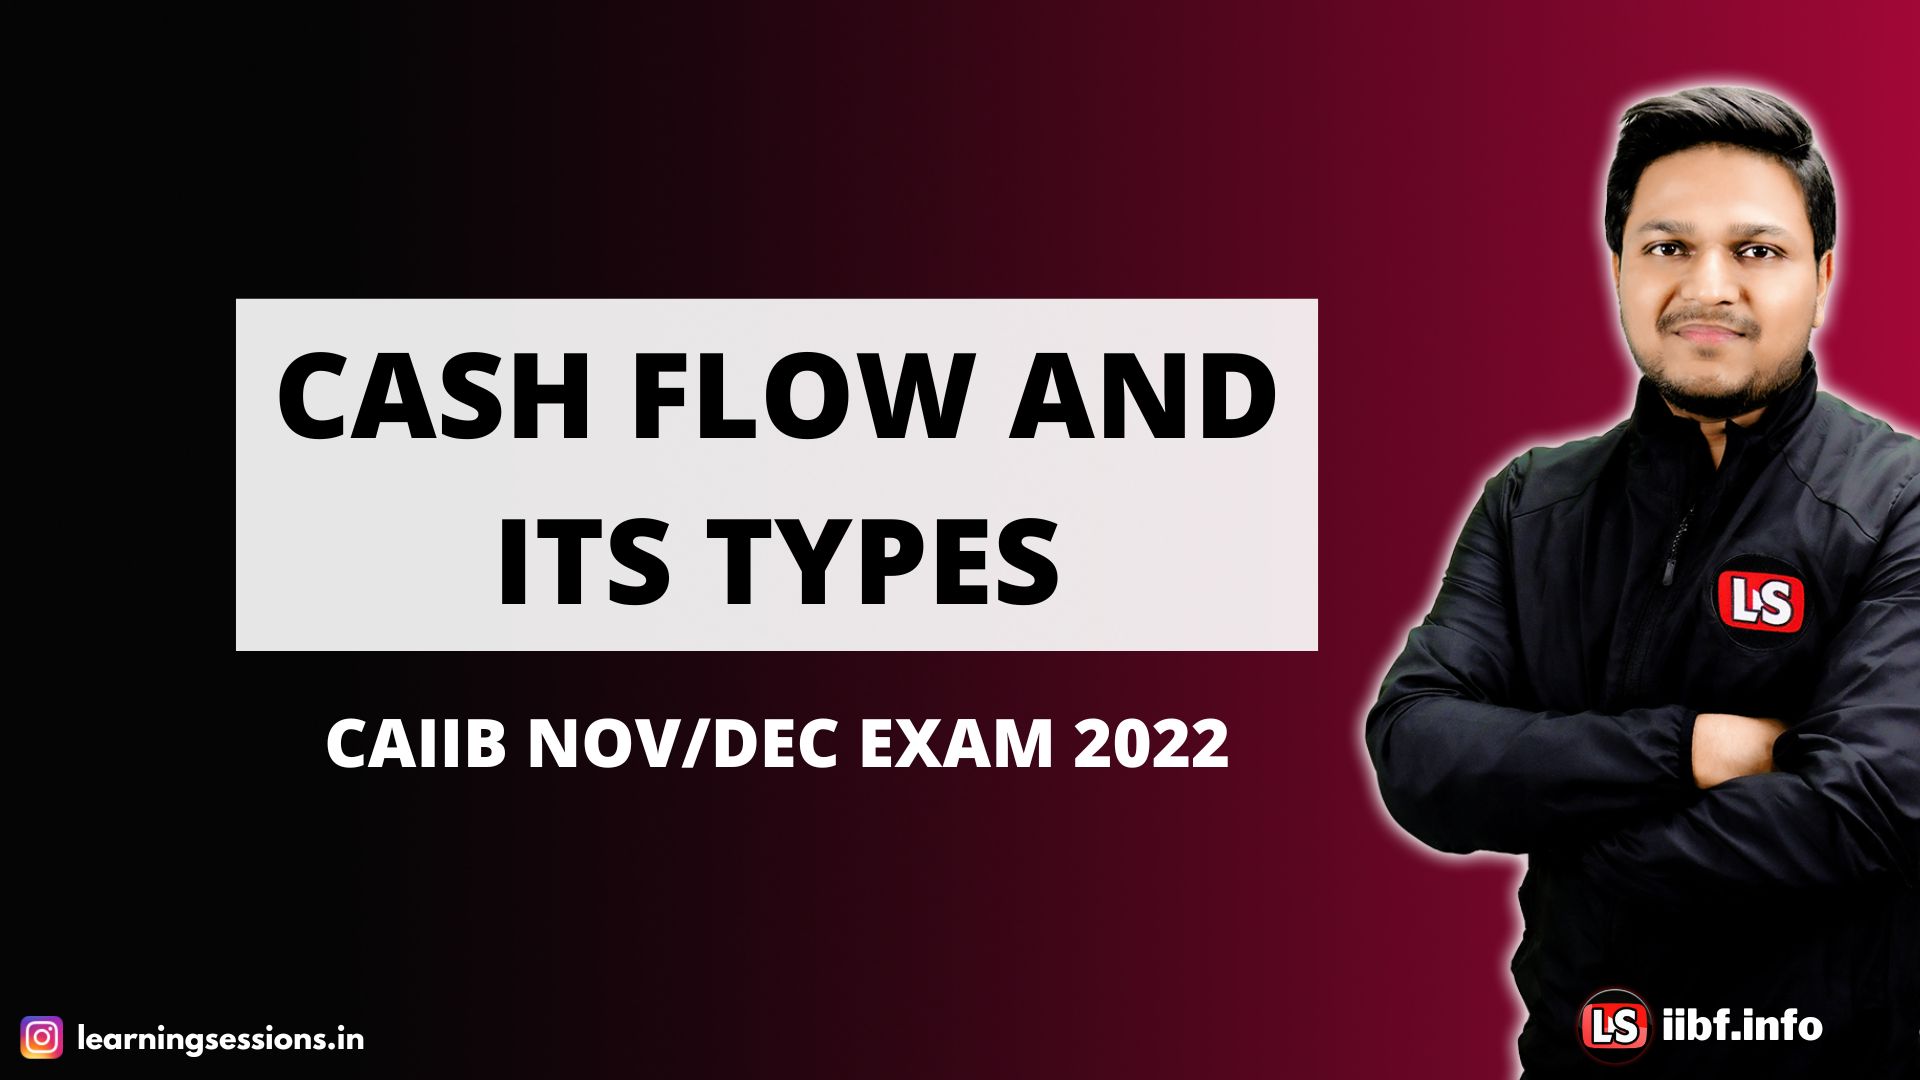 CASH FLOW AND ITS TYPES | CAIIB NOV/DEC EXAM 2022